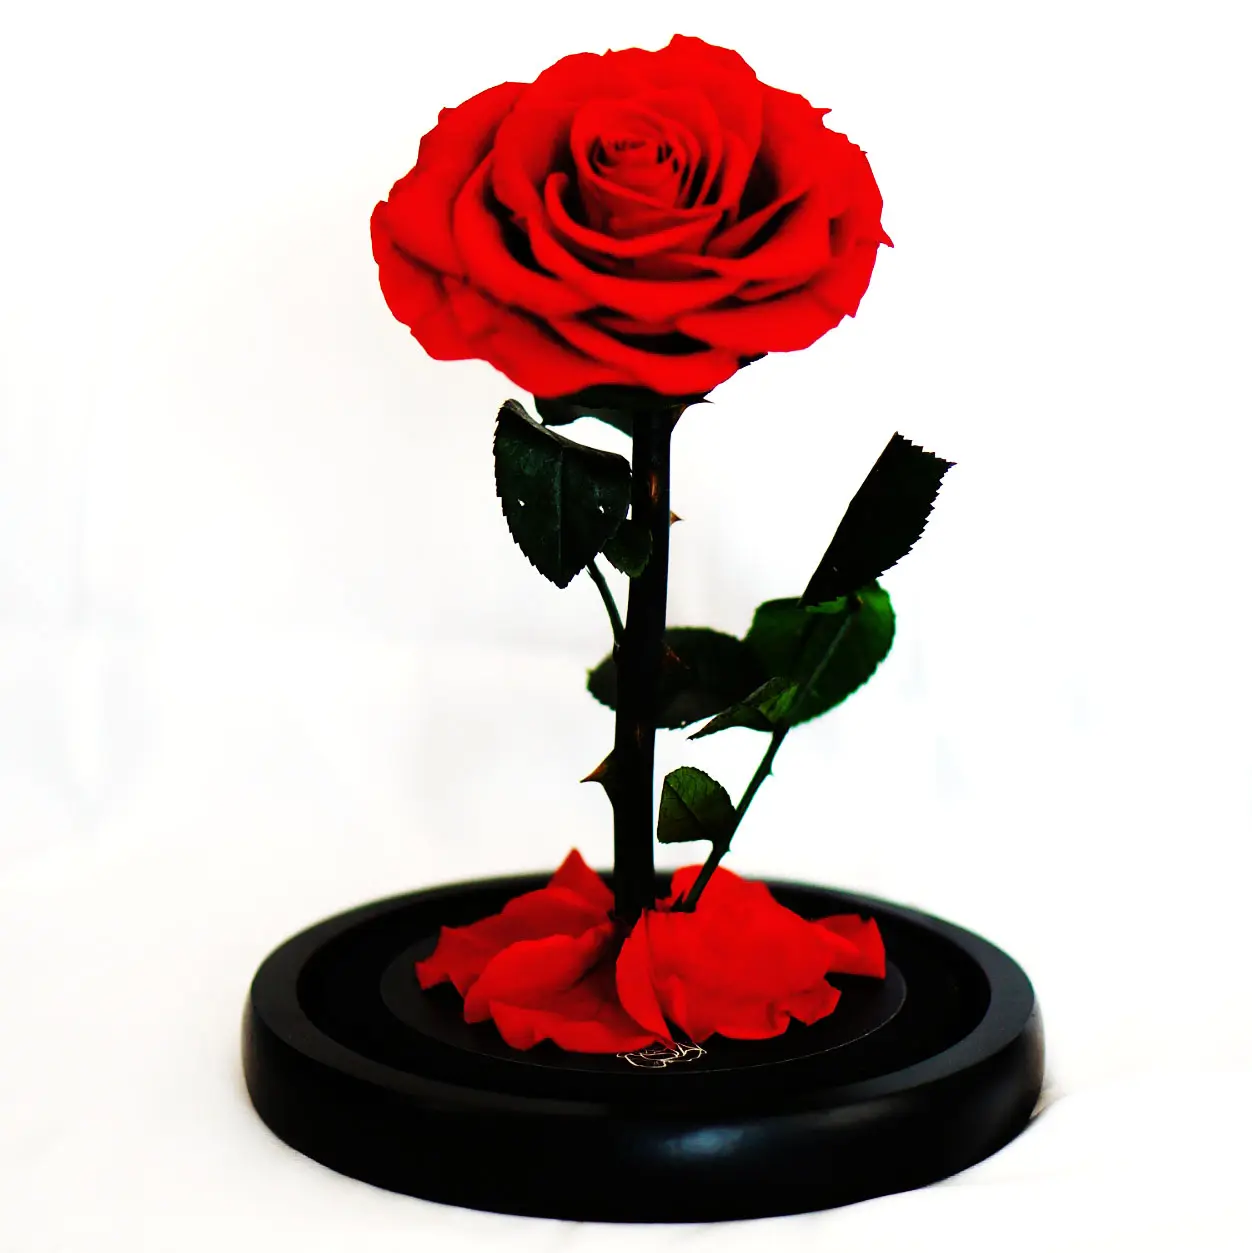 RIG-0001 Aus gezeichnete Qualität 2021 Trend produkte Rose In Glas Konservierte Rosen In Glas